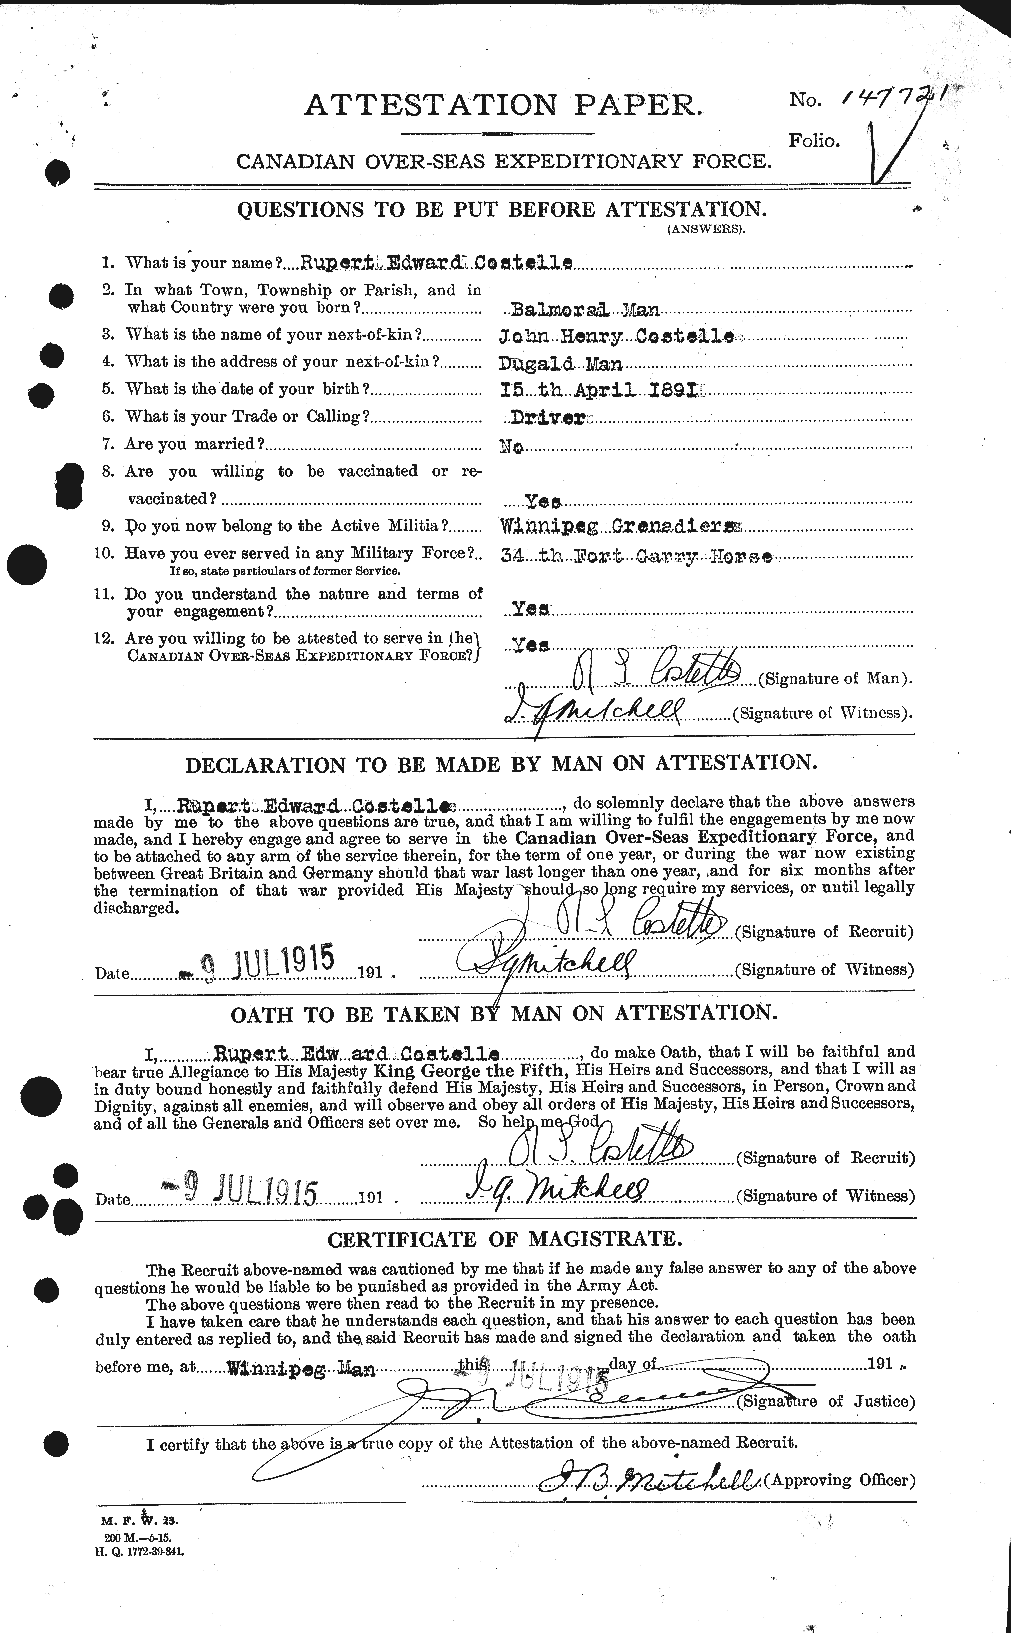 Dossiers du Personnel de la Première Guerre mondiale - CEC 057247a